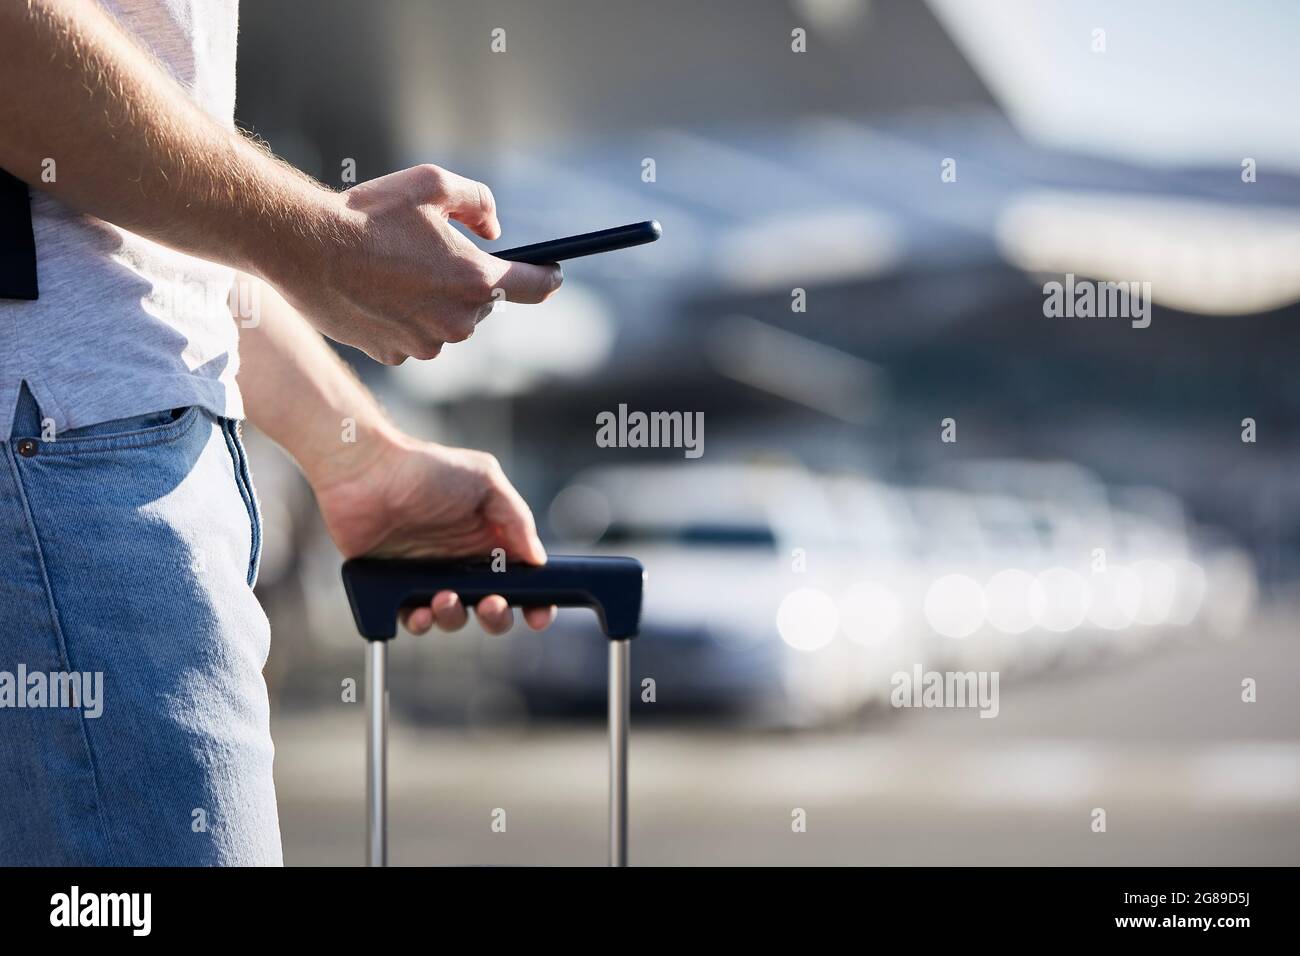 Homme tenant un smartphone et utilisant une application mobile contre une rangée de voitures de taxi. Thèmes technologie moderne, partage de voitures et voyages. Banque D'Images